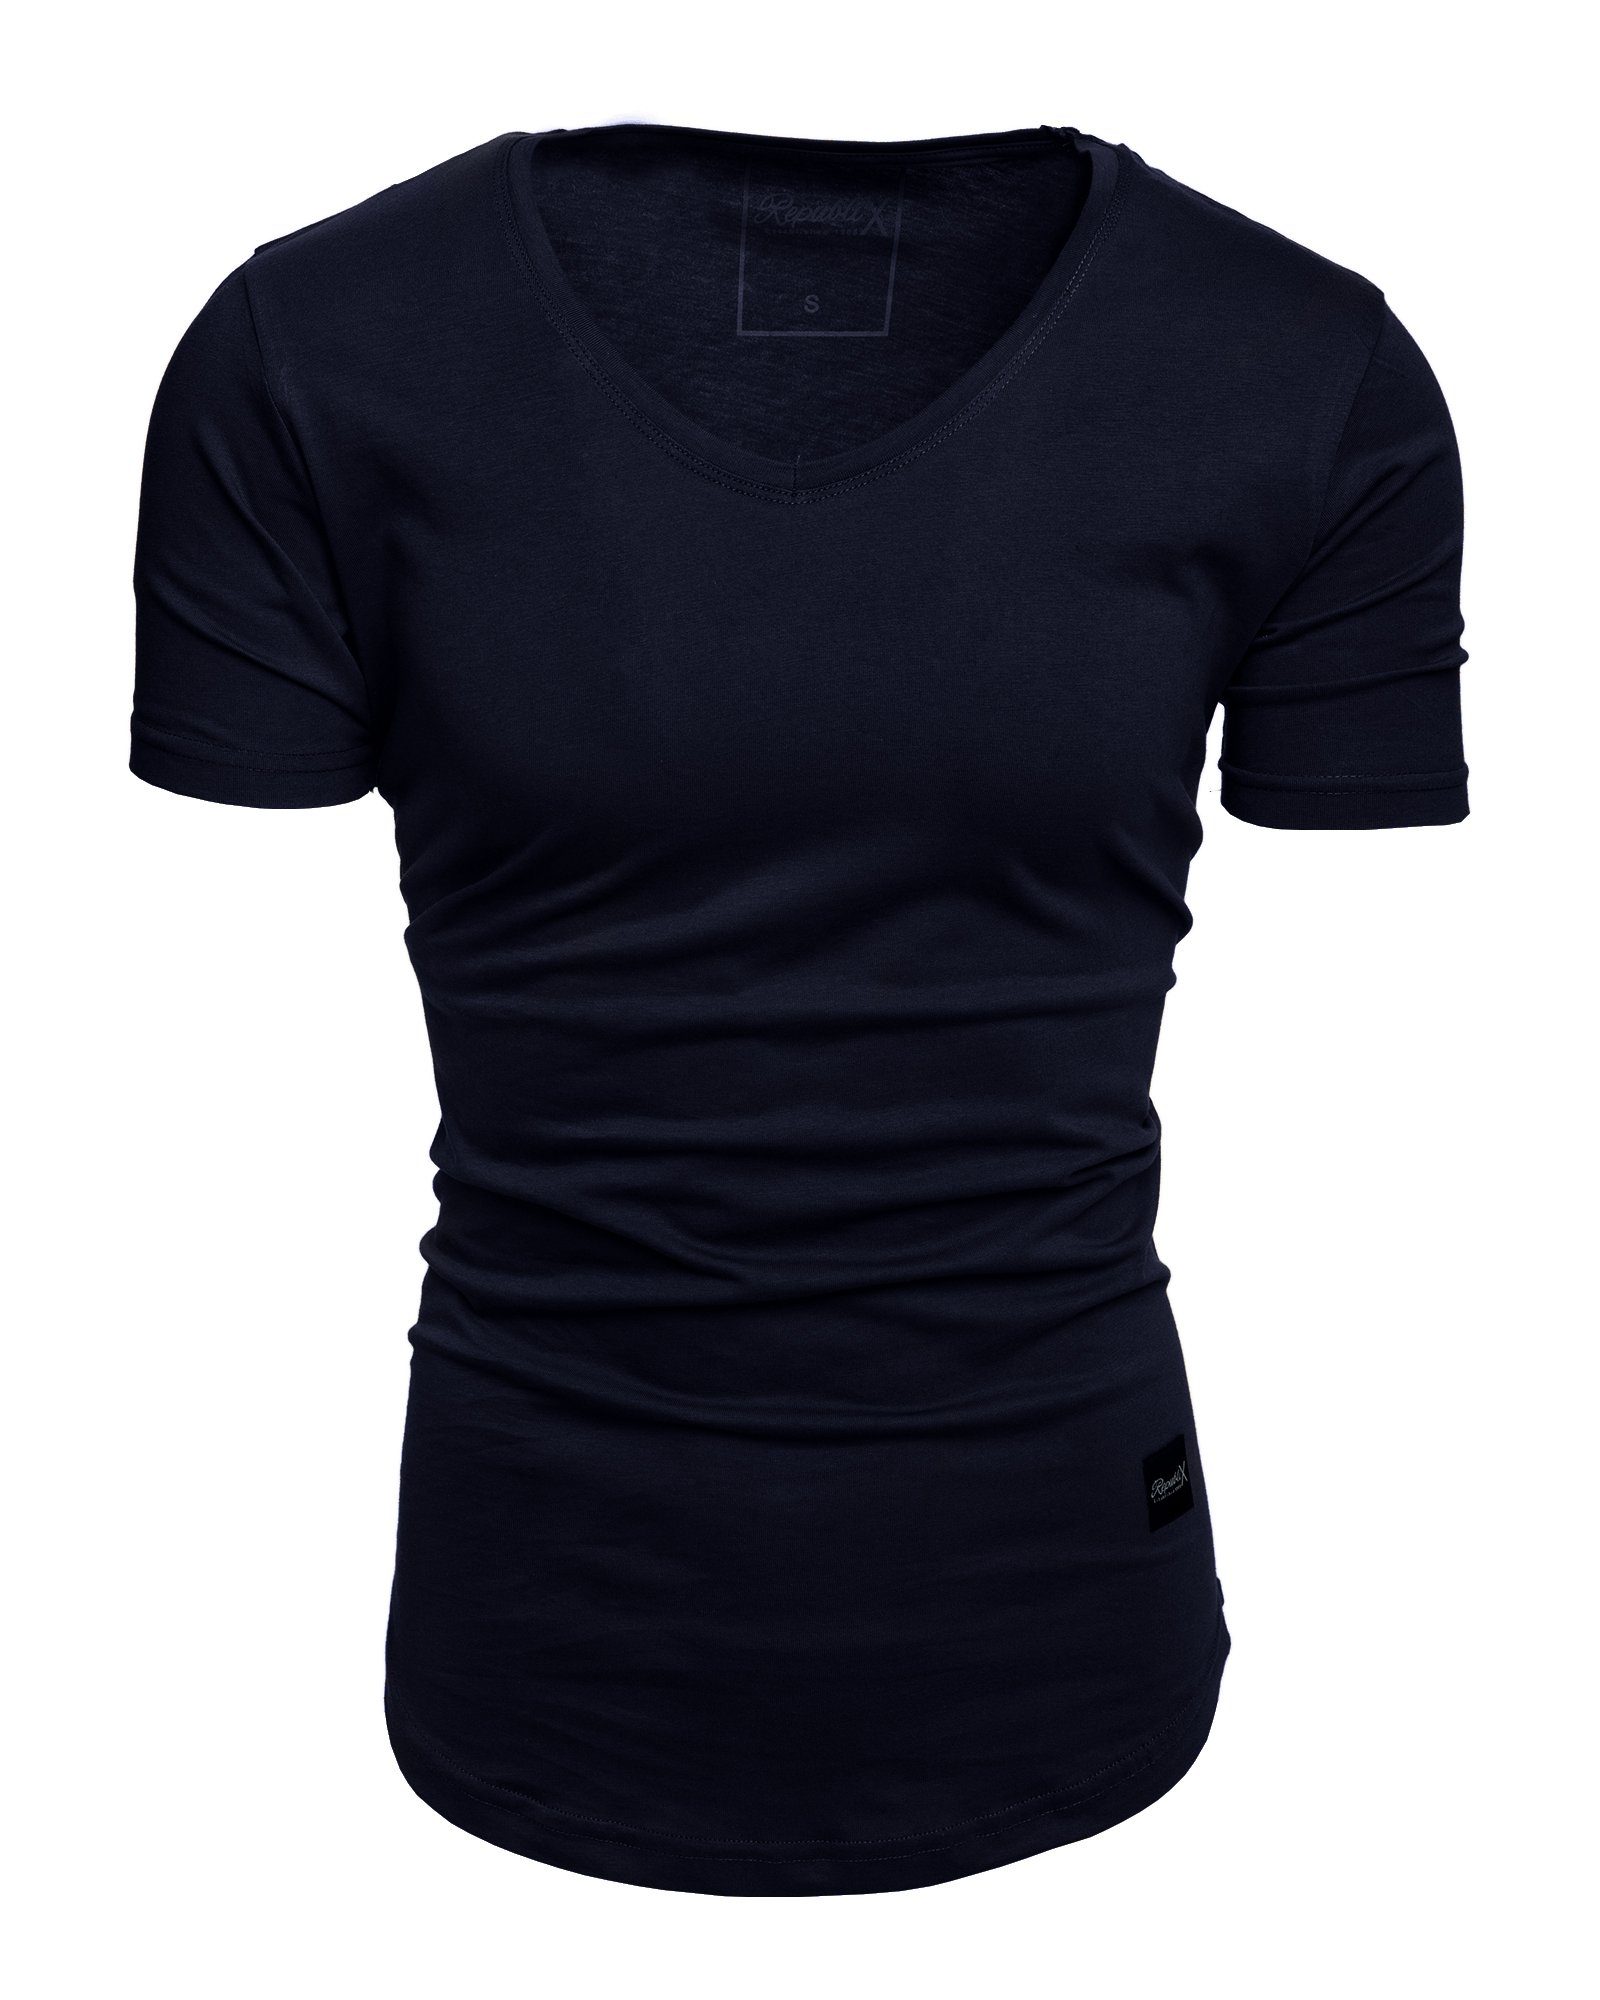 REPUBLIX T-Shirt BRANDON Herren Oversize Basic Shirt mit V-Ausschnitt Navyblau